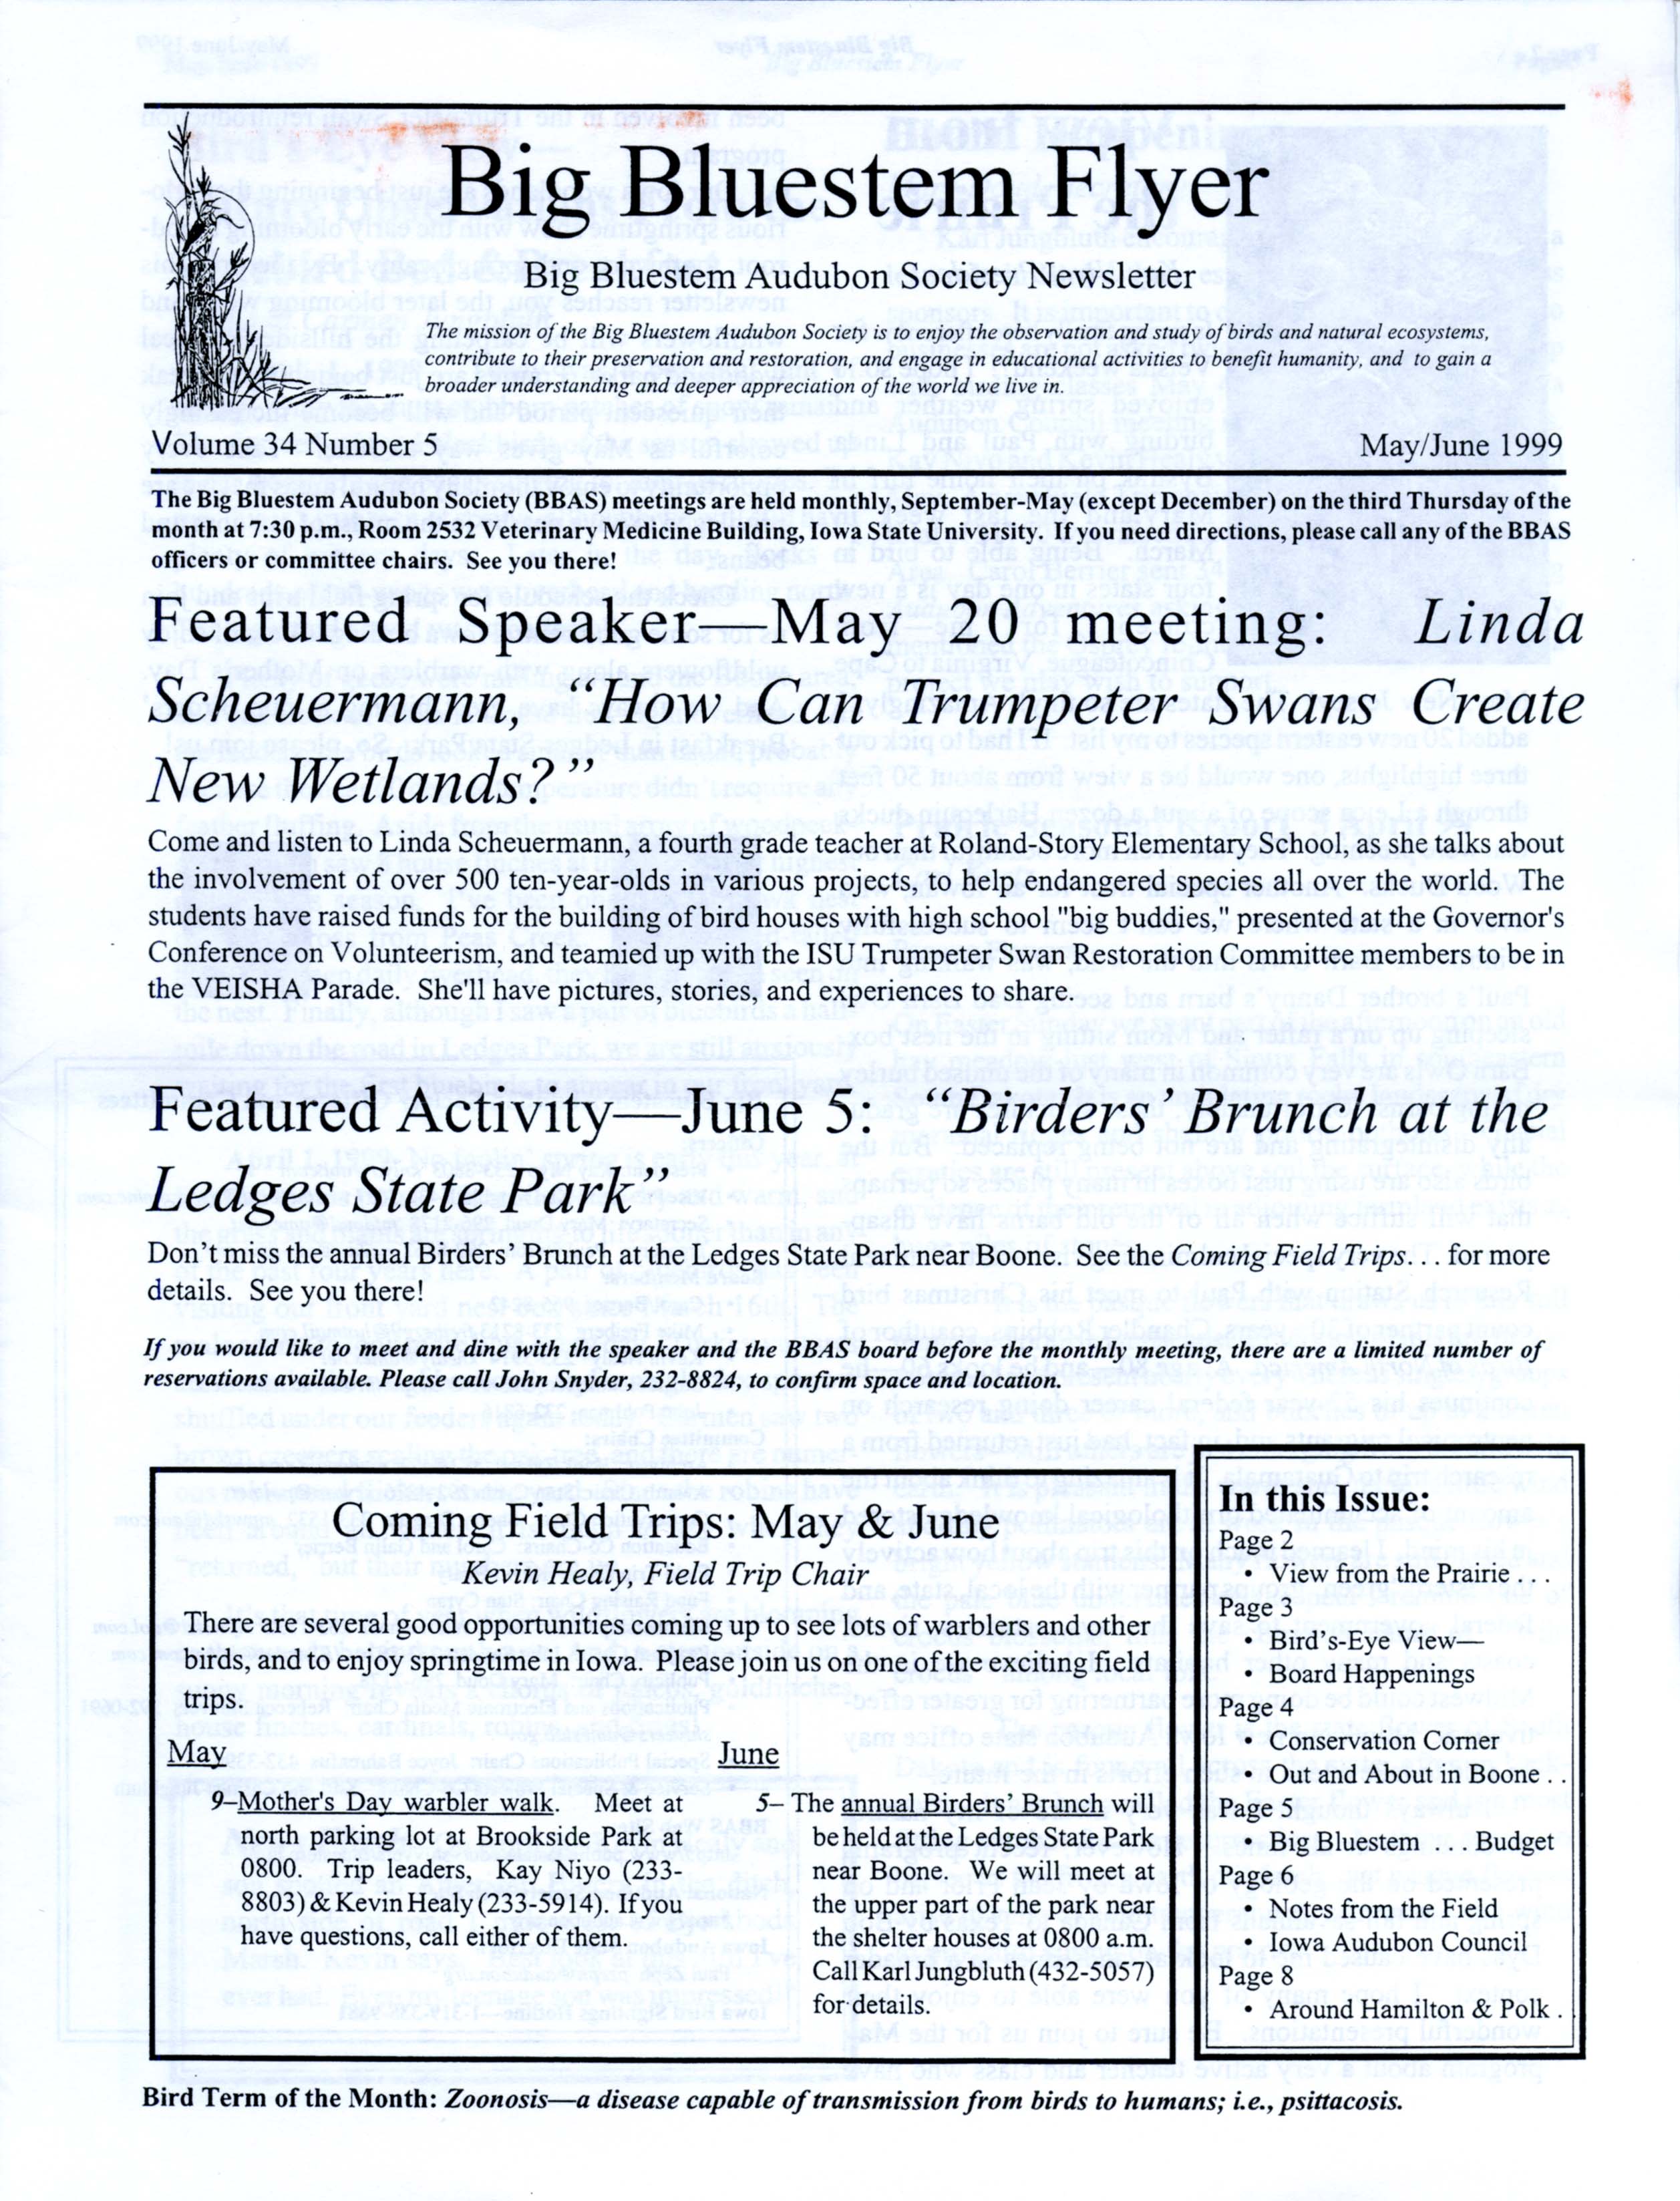 Big Bluestem Flyer, Volume 34, Number 5, May/June 1999